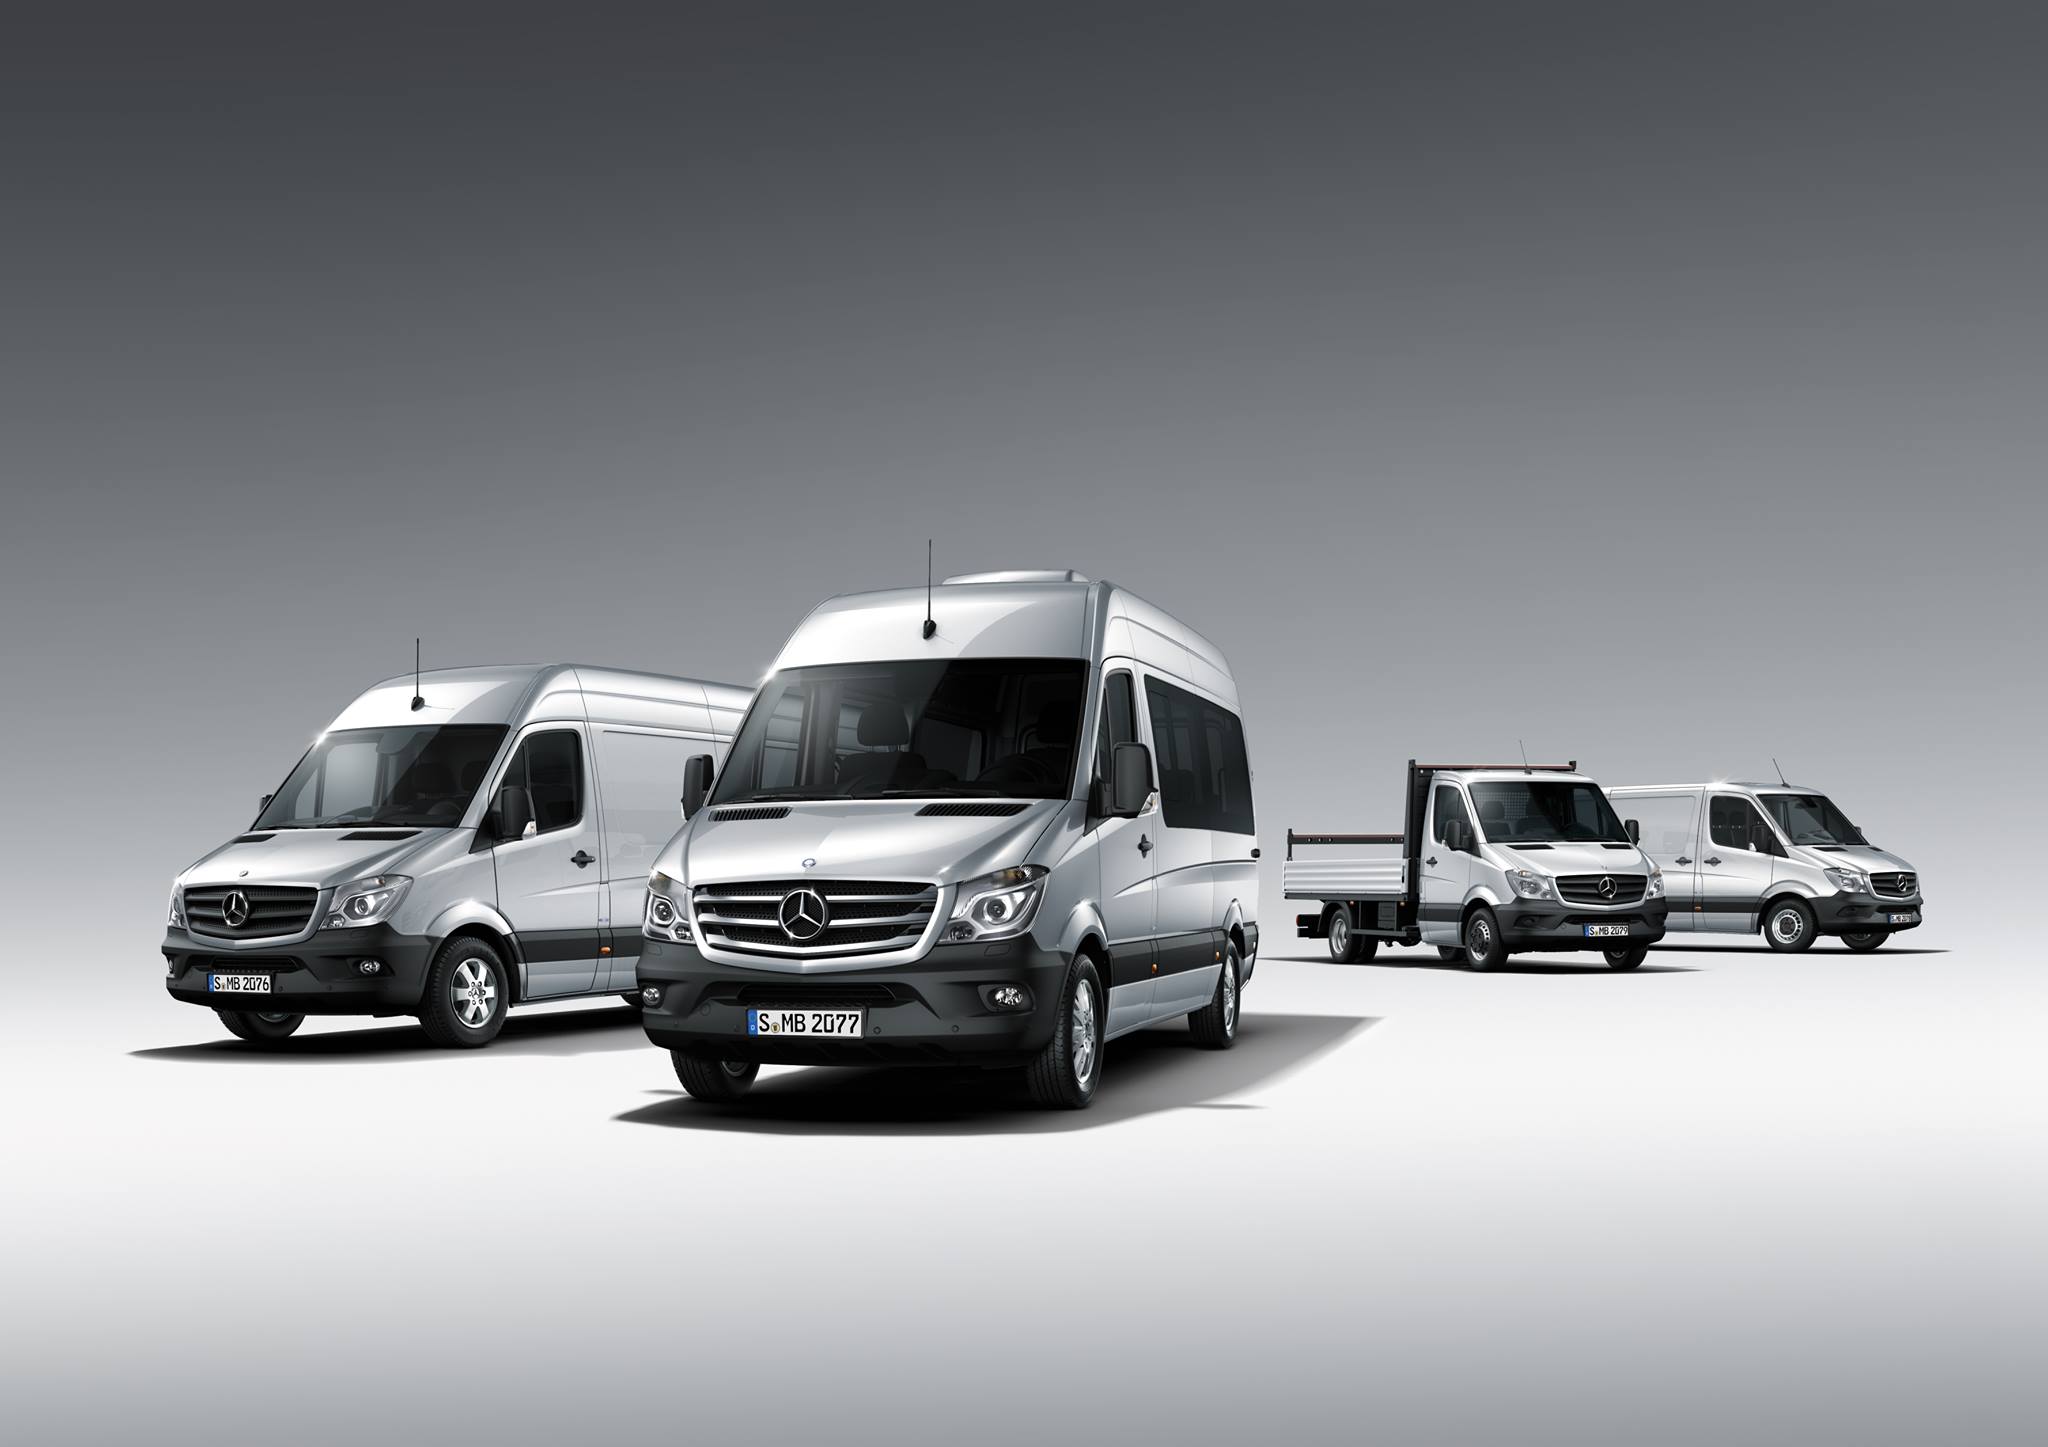 Ավանգարդ Մոթորսը ներկայացրել է Mercedes-Benz մակնիշի կոմերցիոն մոդելների ամբողջական շարքը